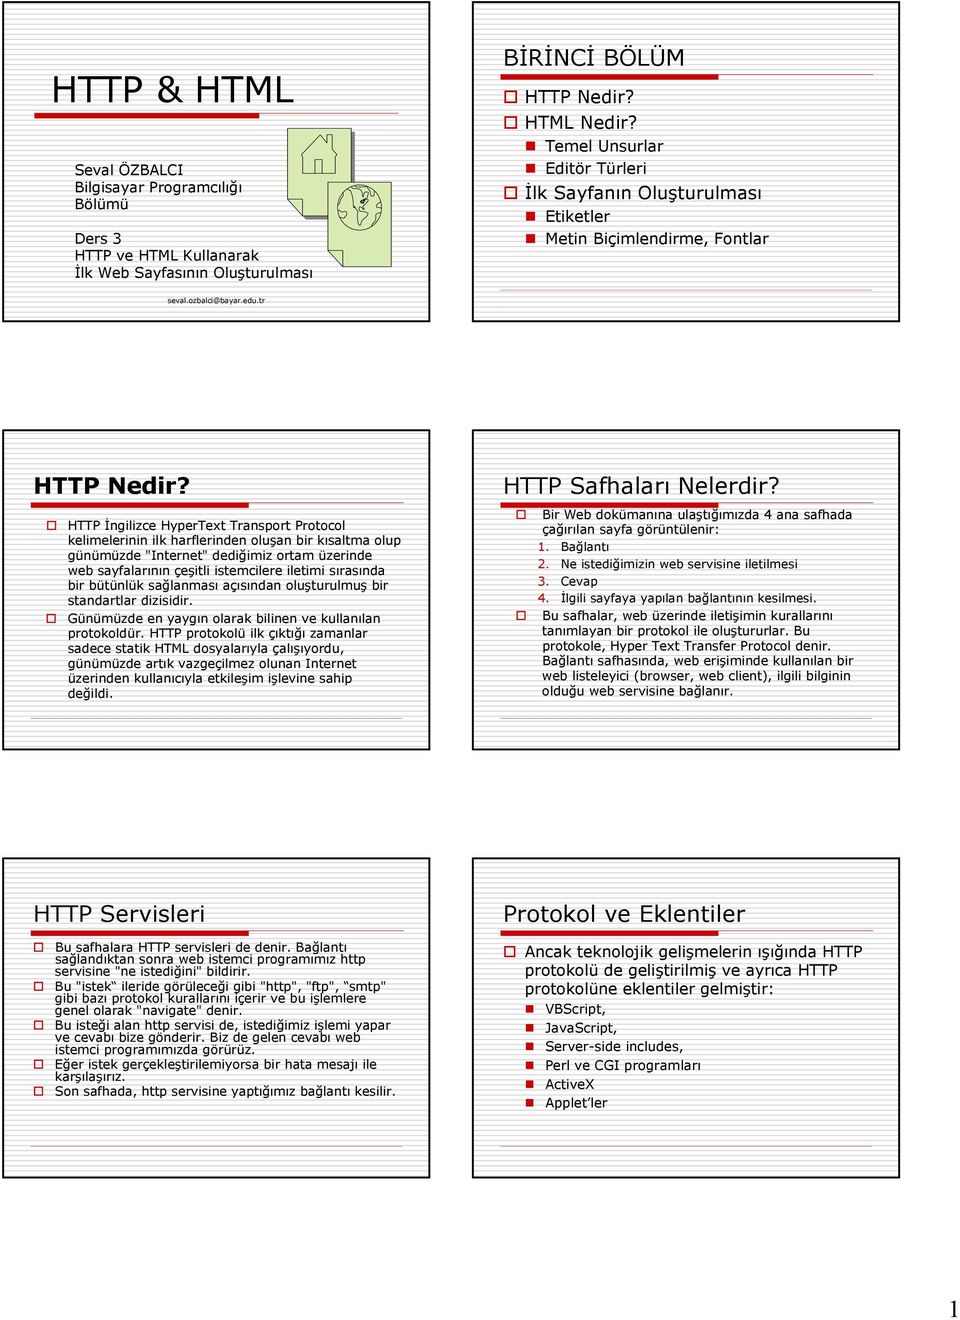 HTTP İngilizce HyperText Transport Protocol kelimelerinin ilk harflerinden oluşan bir kısaltma olup günümüzde "Internet" dediğimiz ortam üzerinde web sayfalarının çeşitli istemcilere iletimi